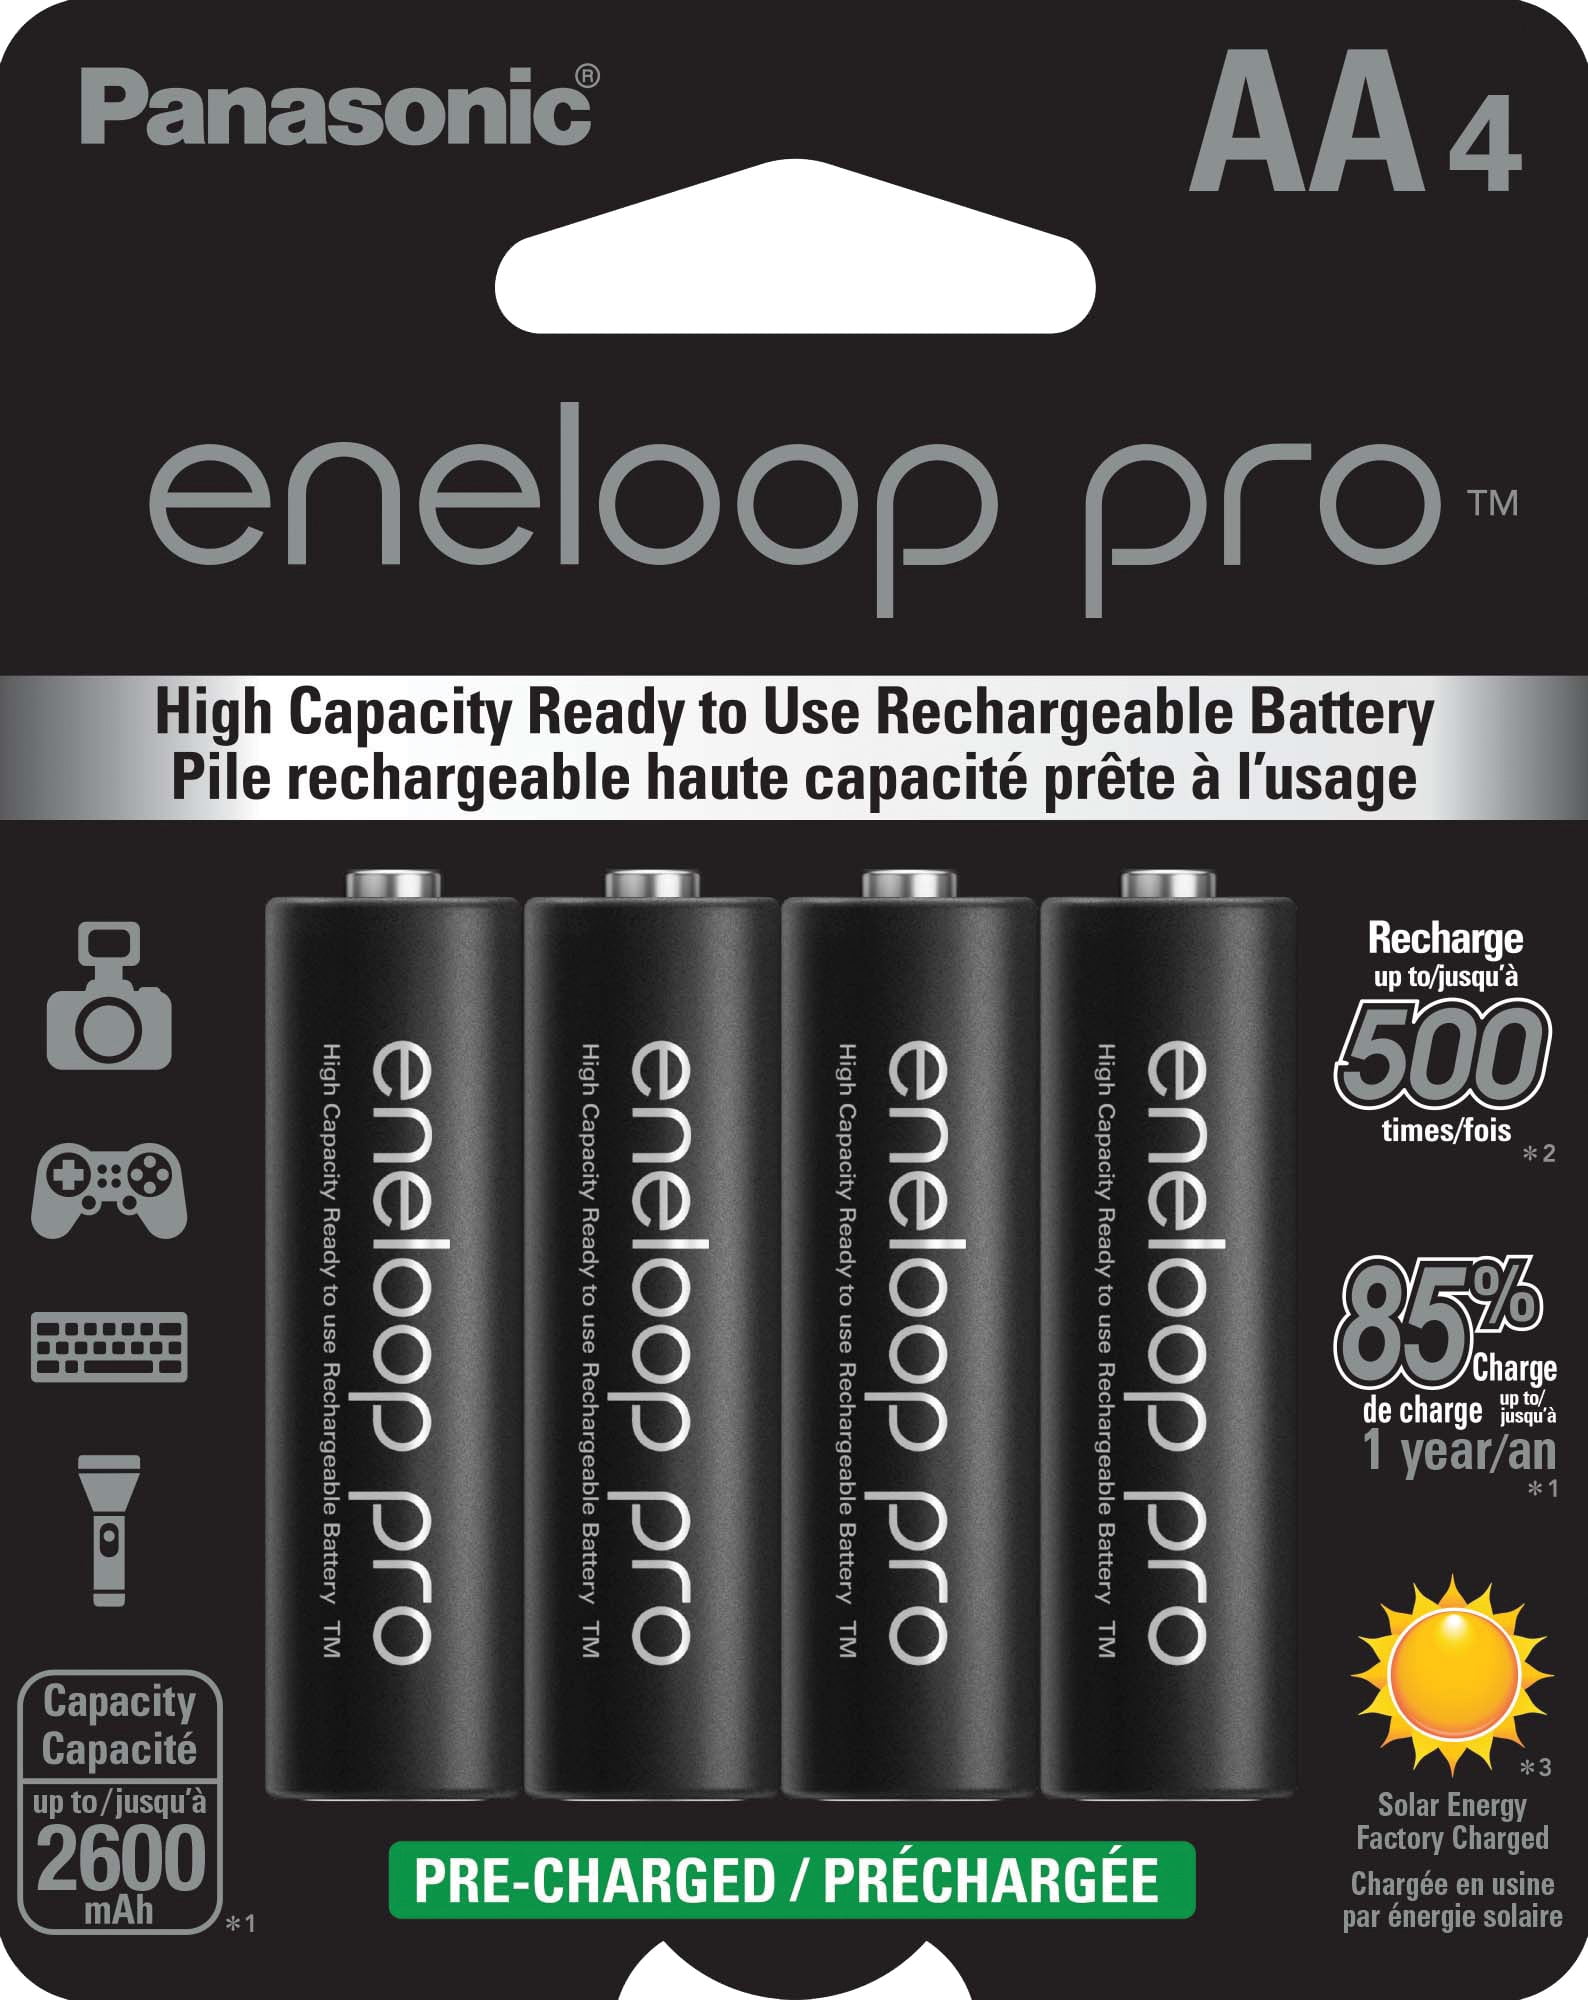 Panasonic Eneloop AA Size Rechargeable Batteries 4 Pack - Noel Leeming